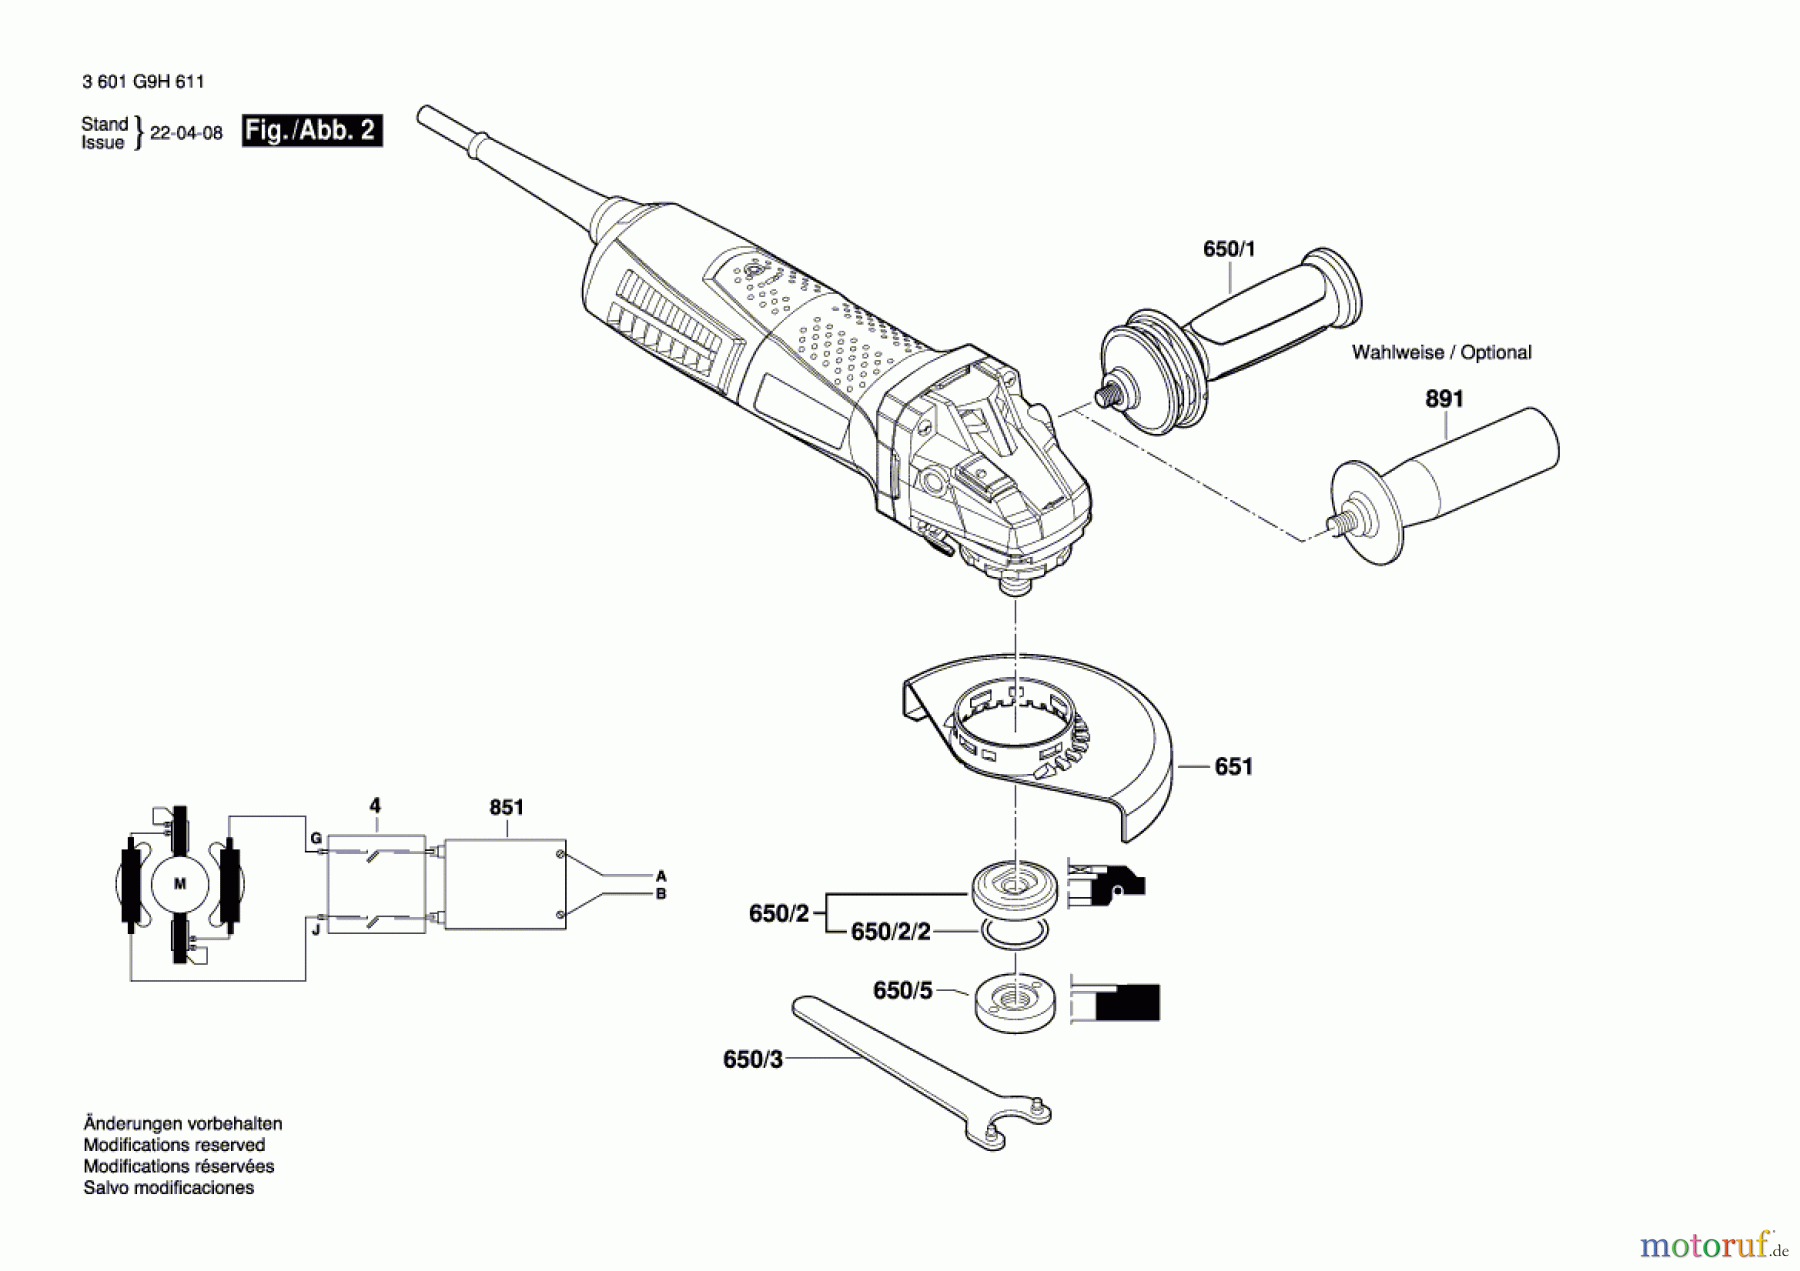  Bosch Werkzeug Winkelschleifer Hg 10-125VS Seite 2